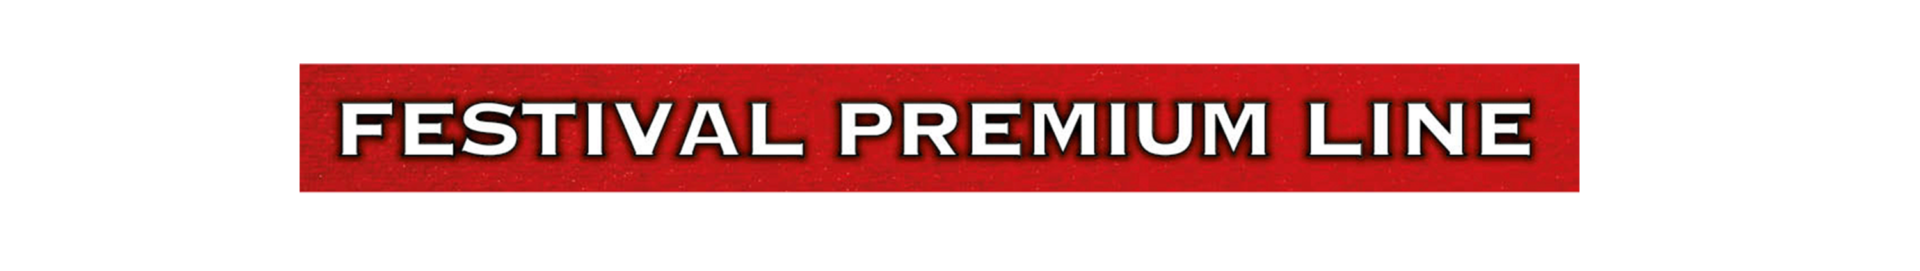 logo_premium